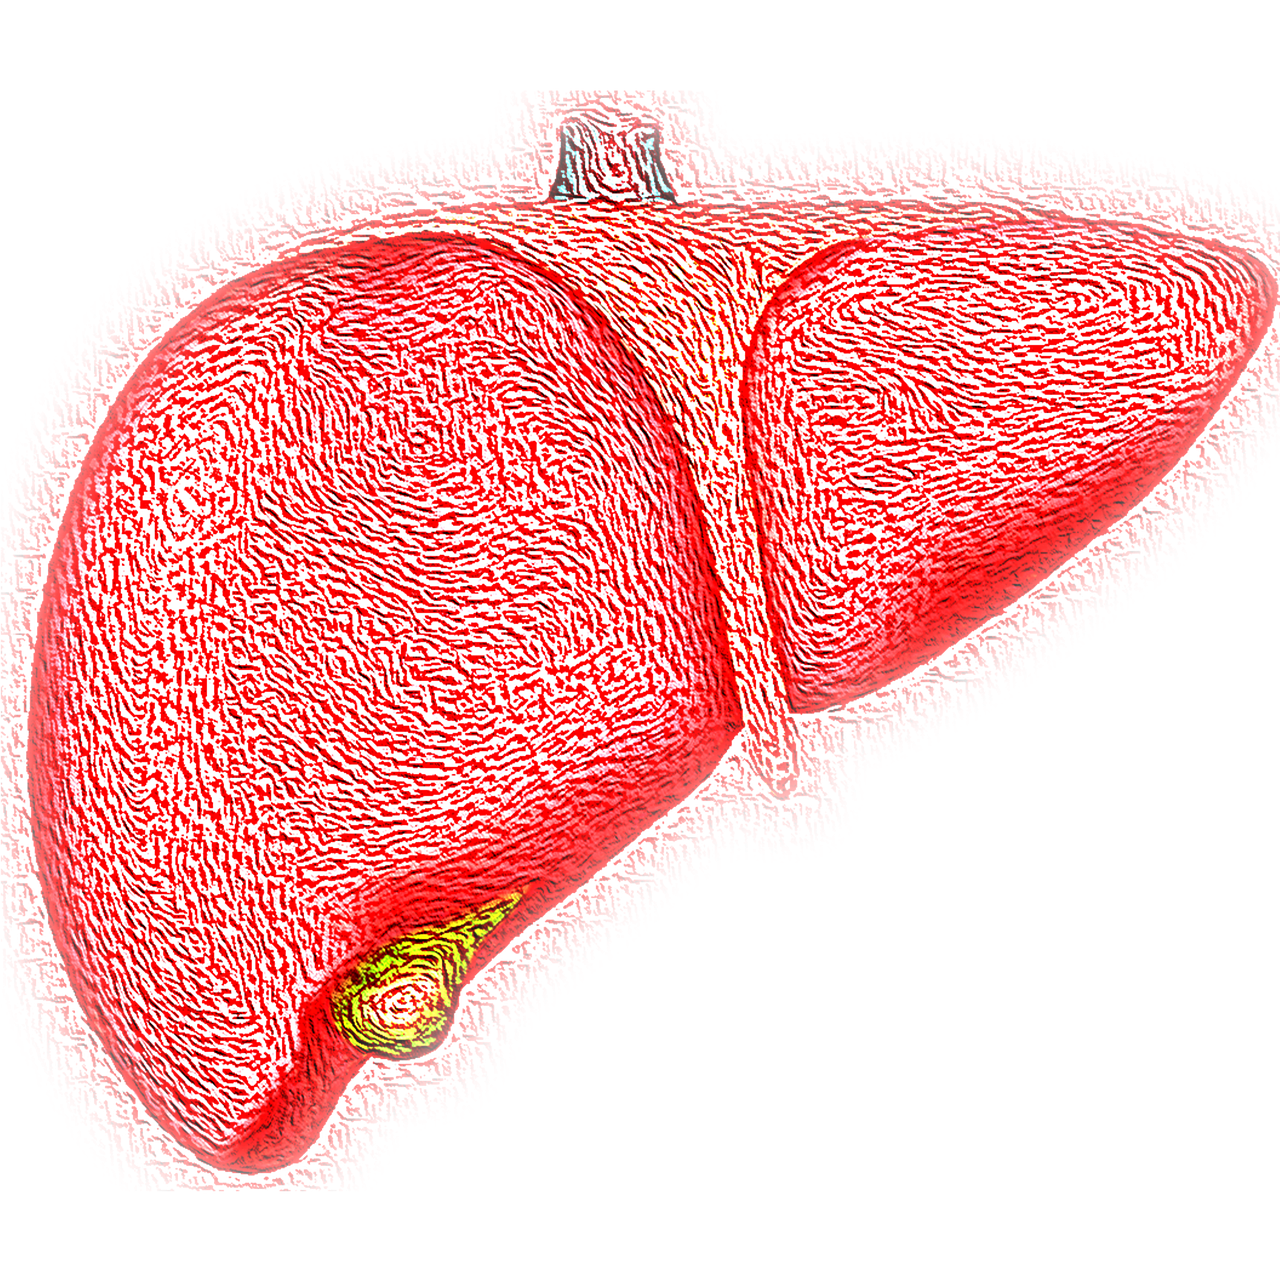 El hígado (1). Anatomía